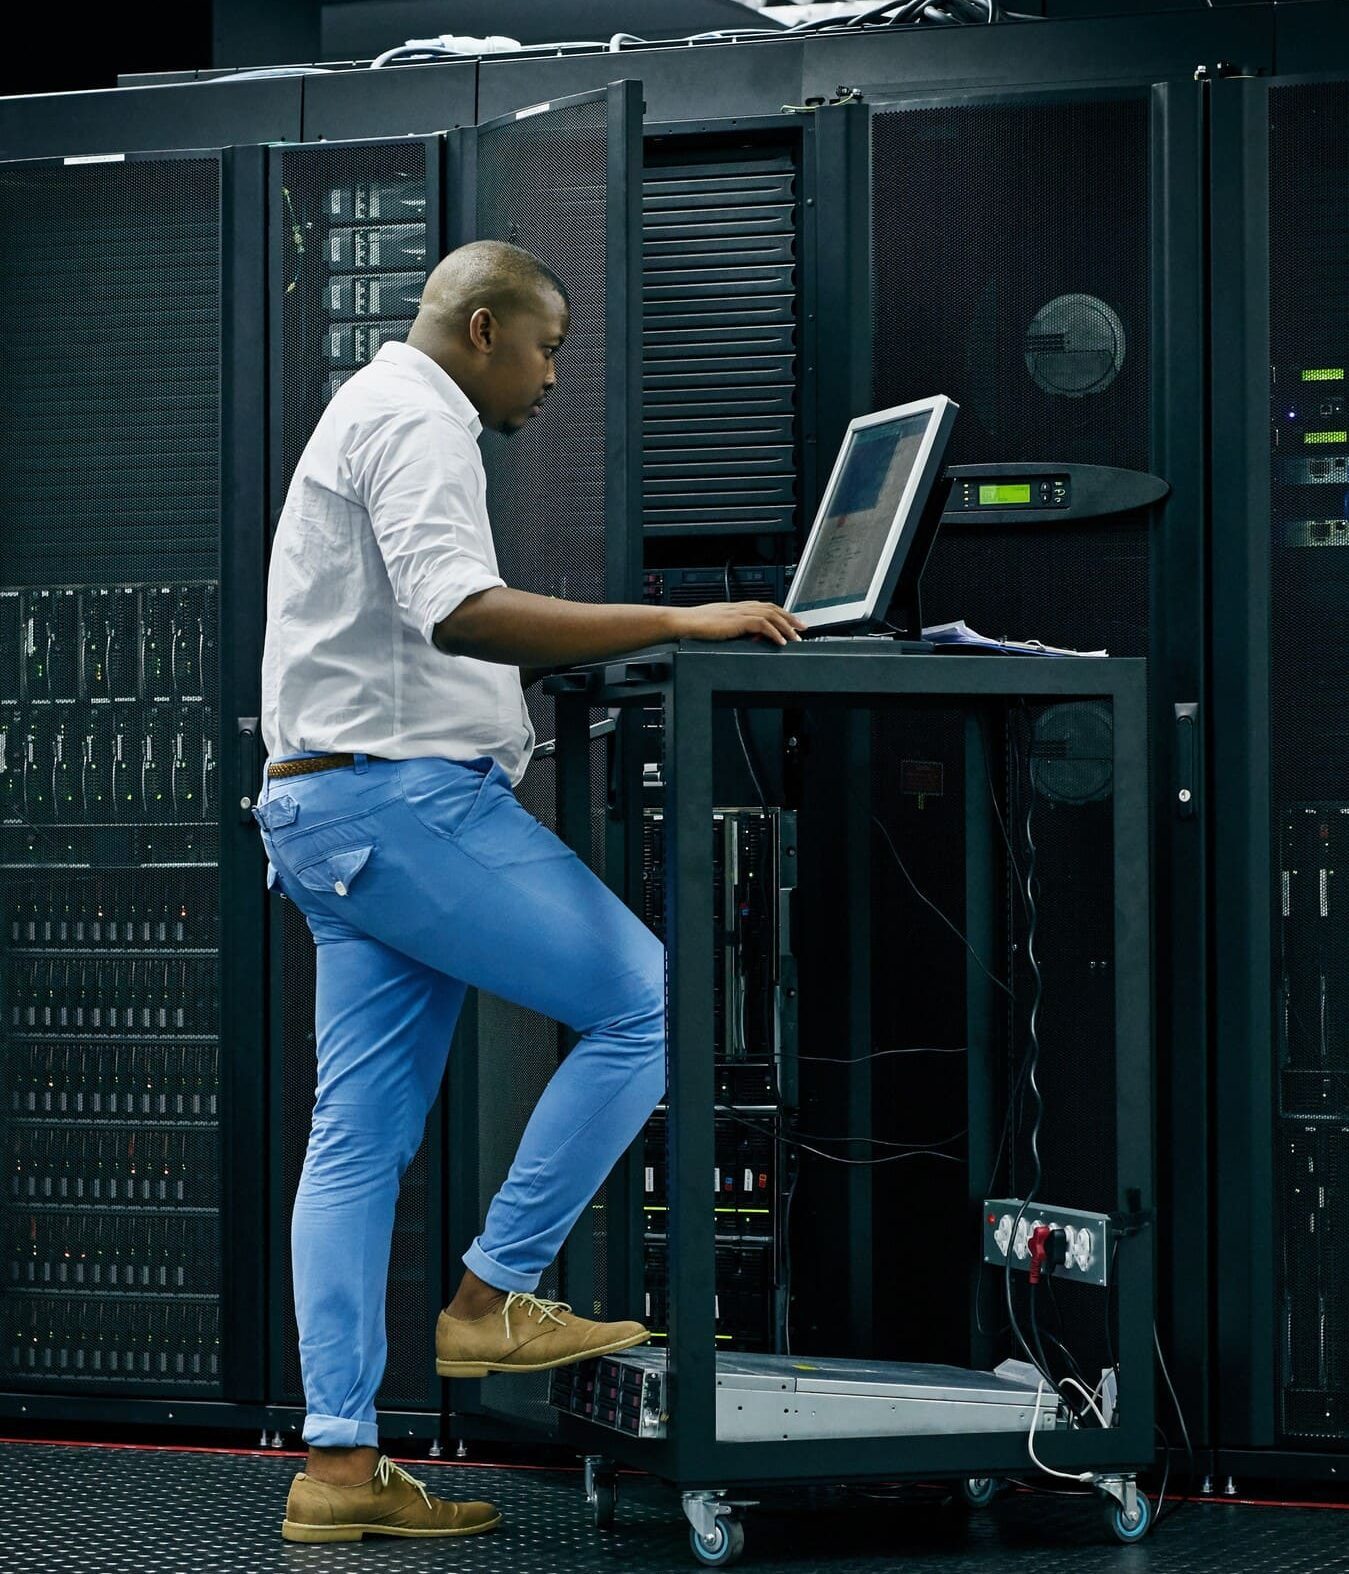 Hombre manipulando un ordenador en un lugar de servidores y paneles eléctricos.